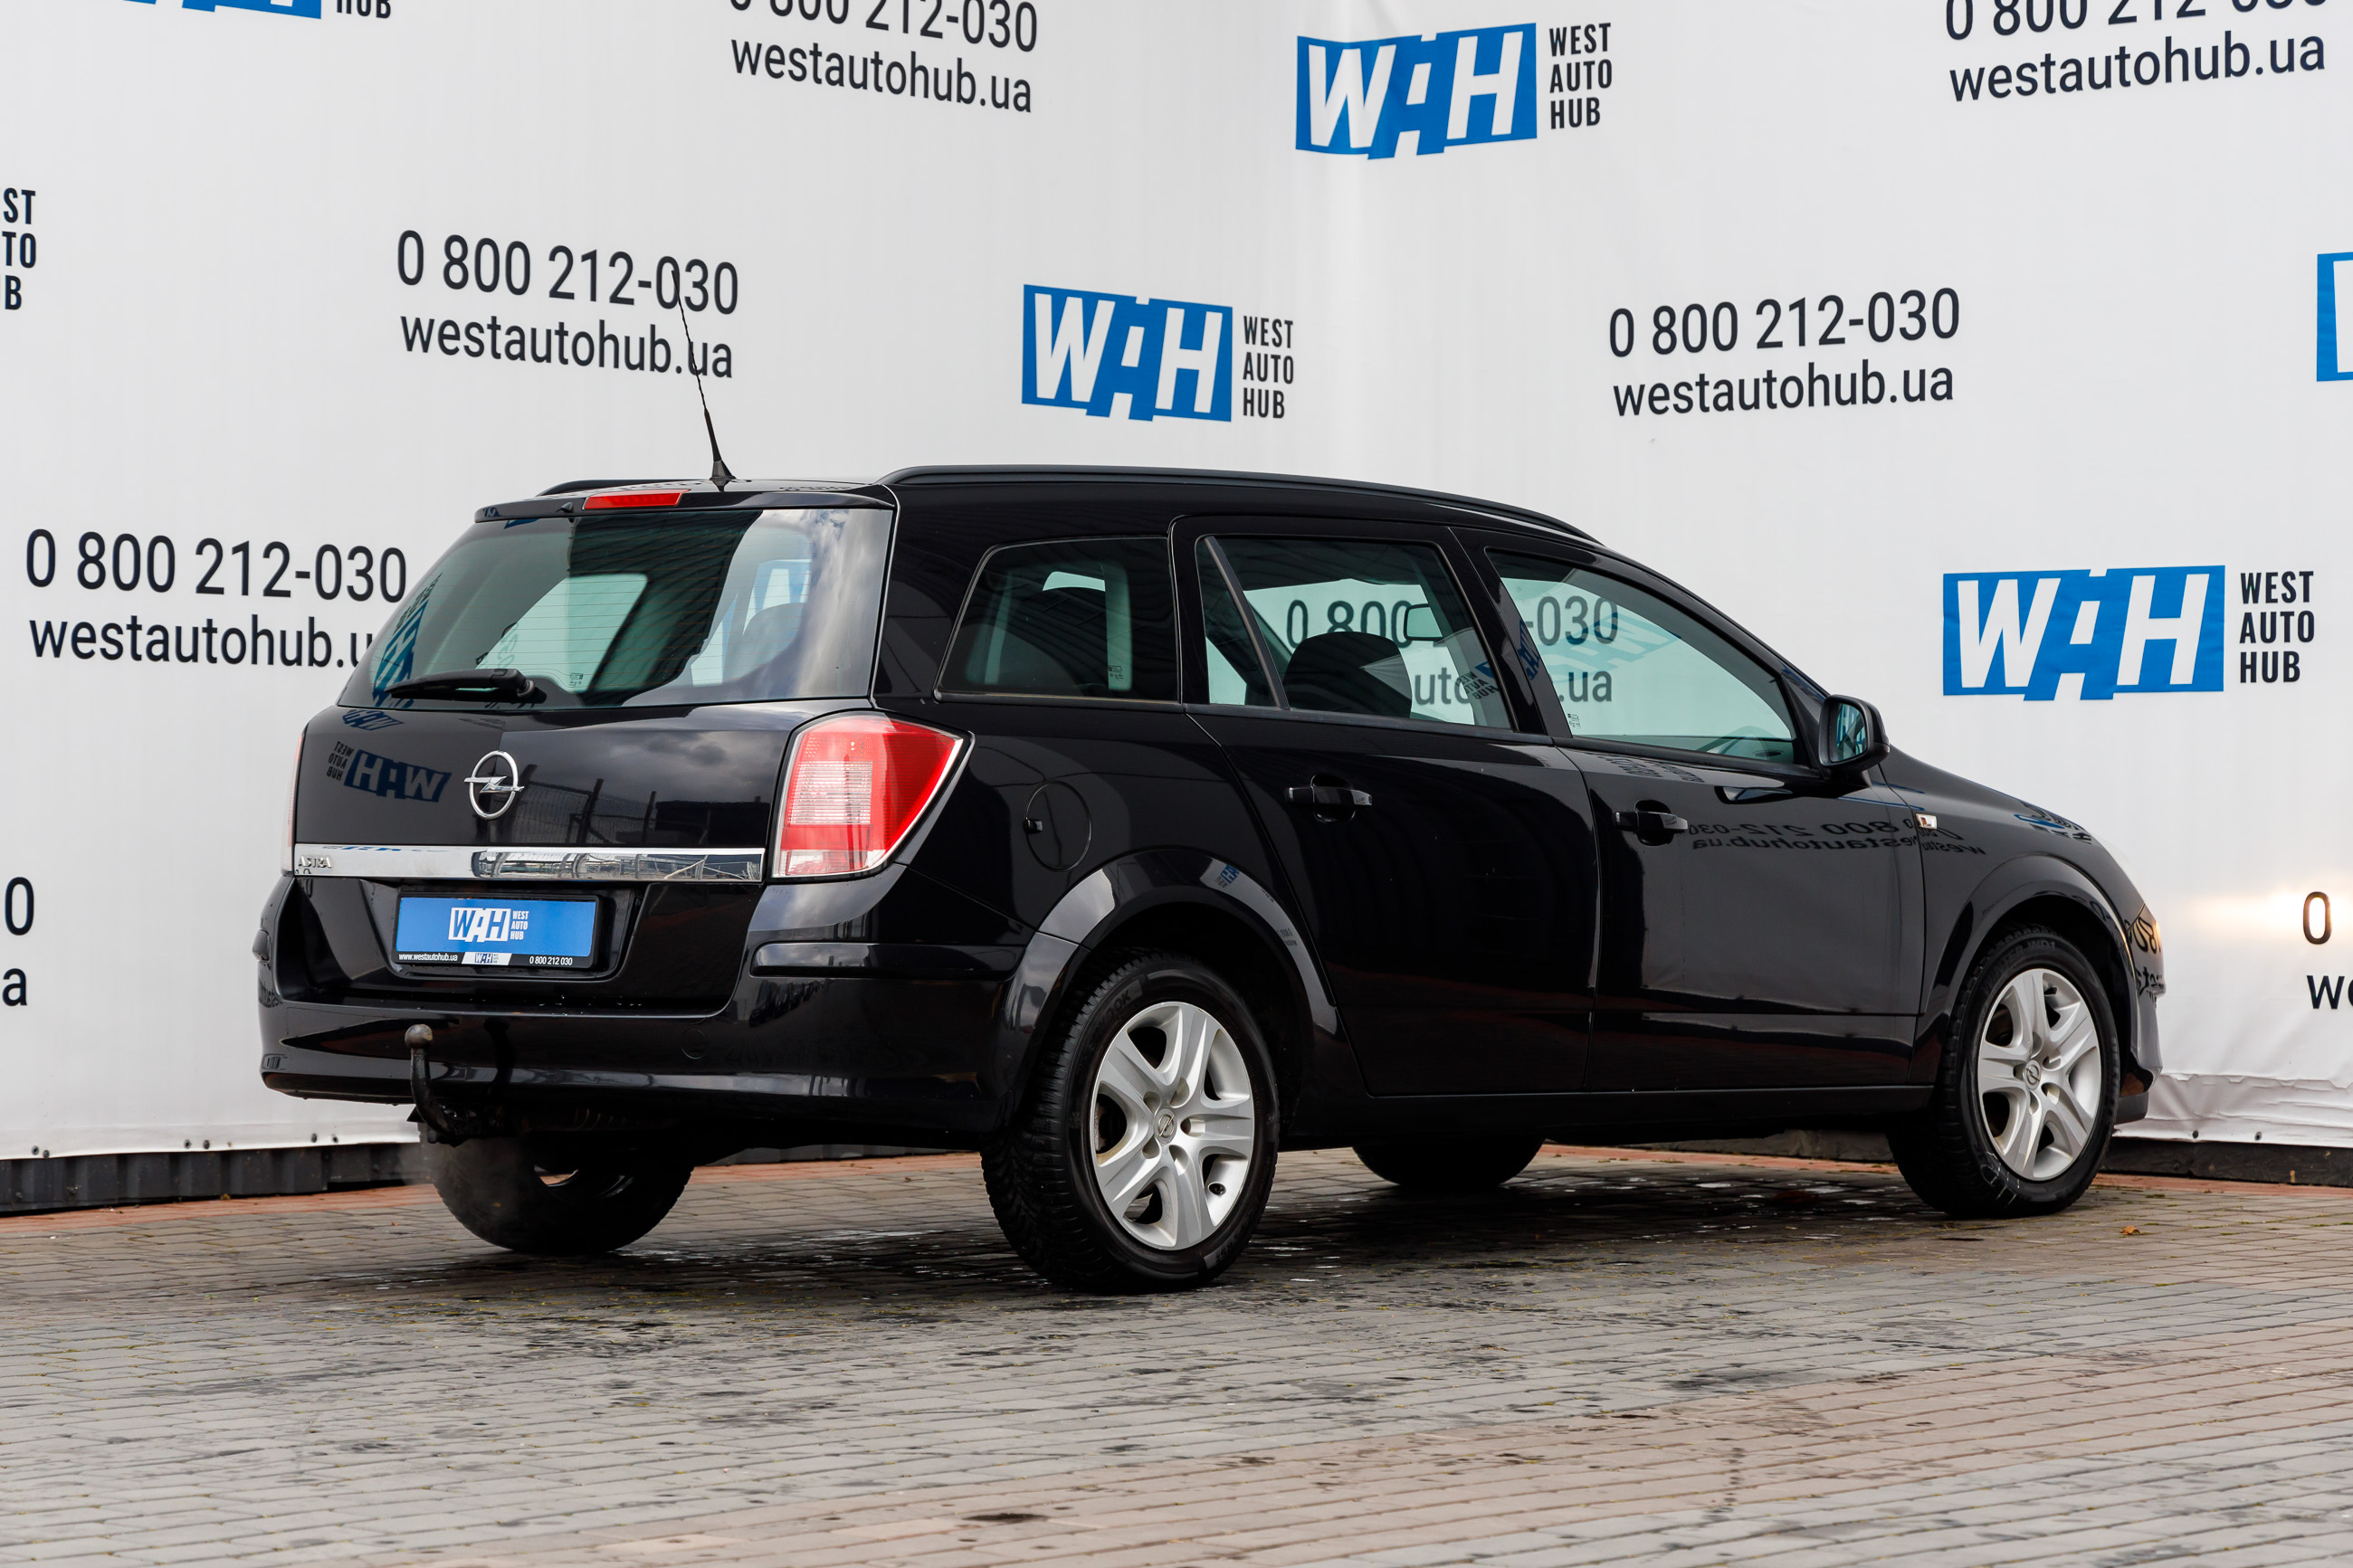 Opel Astra H 2010 acheter à crédit en Pologne, prix de location